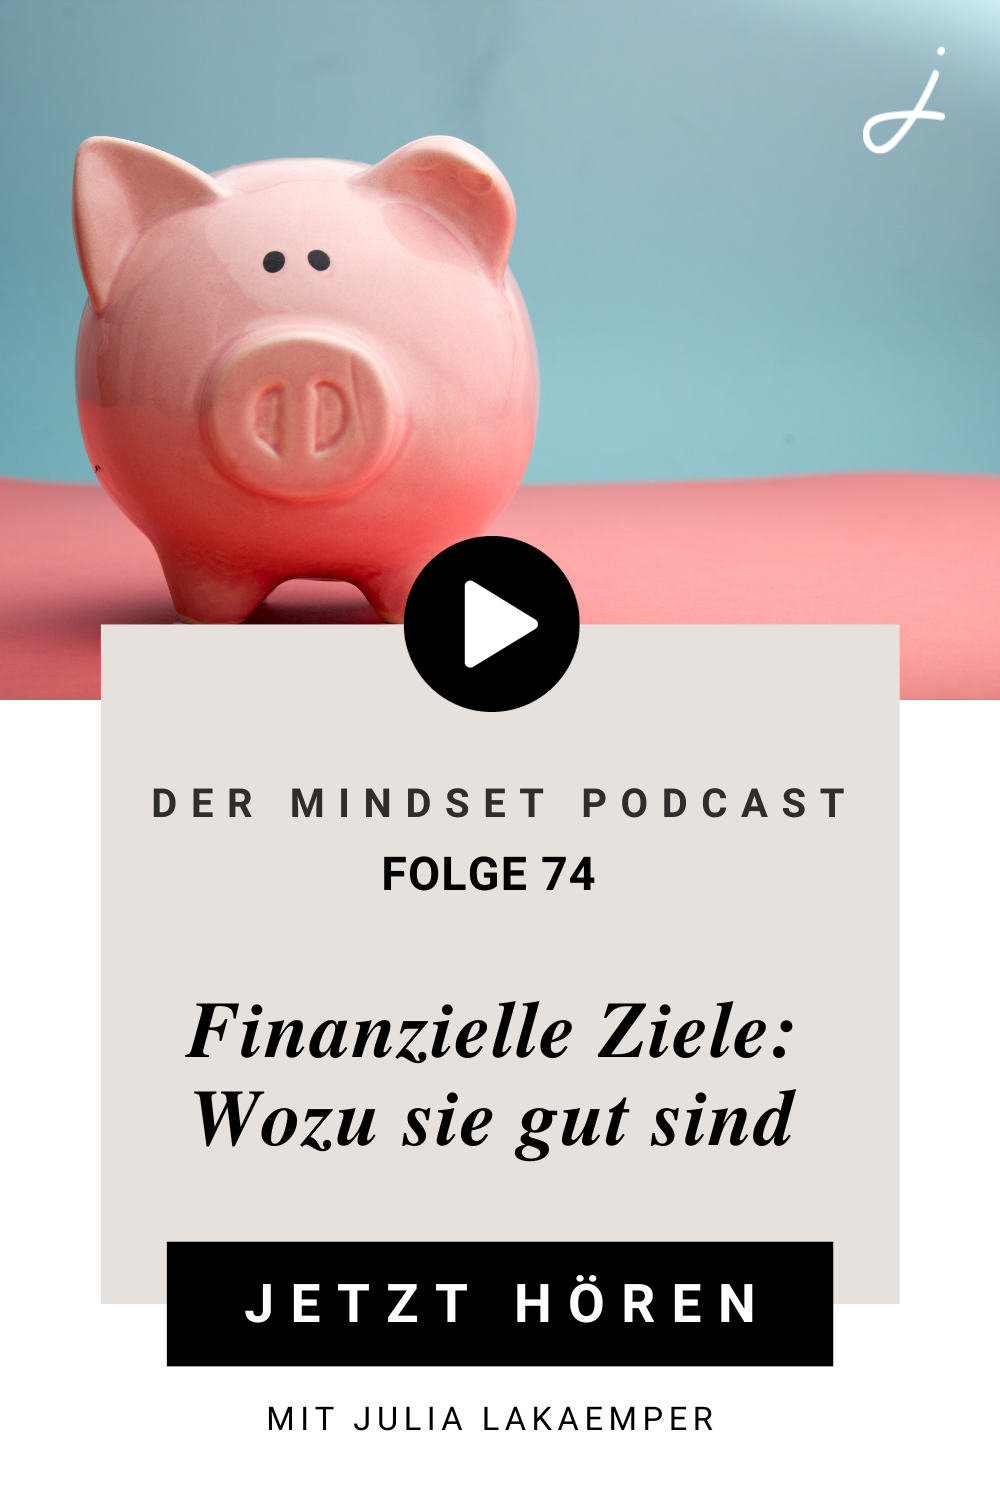 Pinterest Pin zum Podcast-Folge #"Finanzielle Ziele: Wozu sie gut sind"